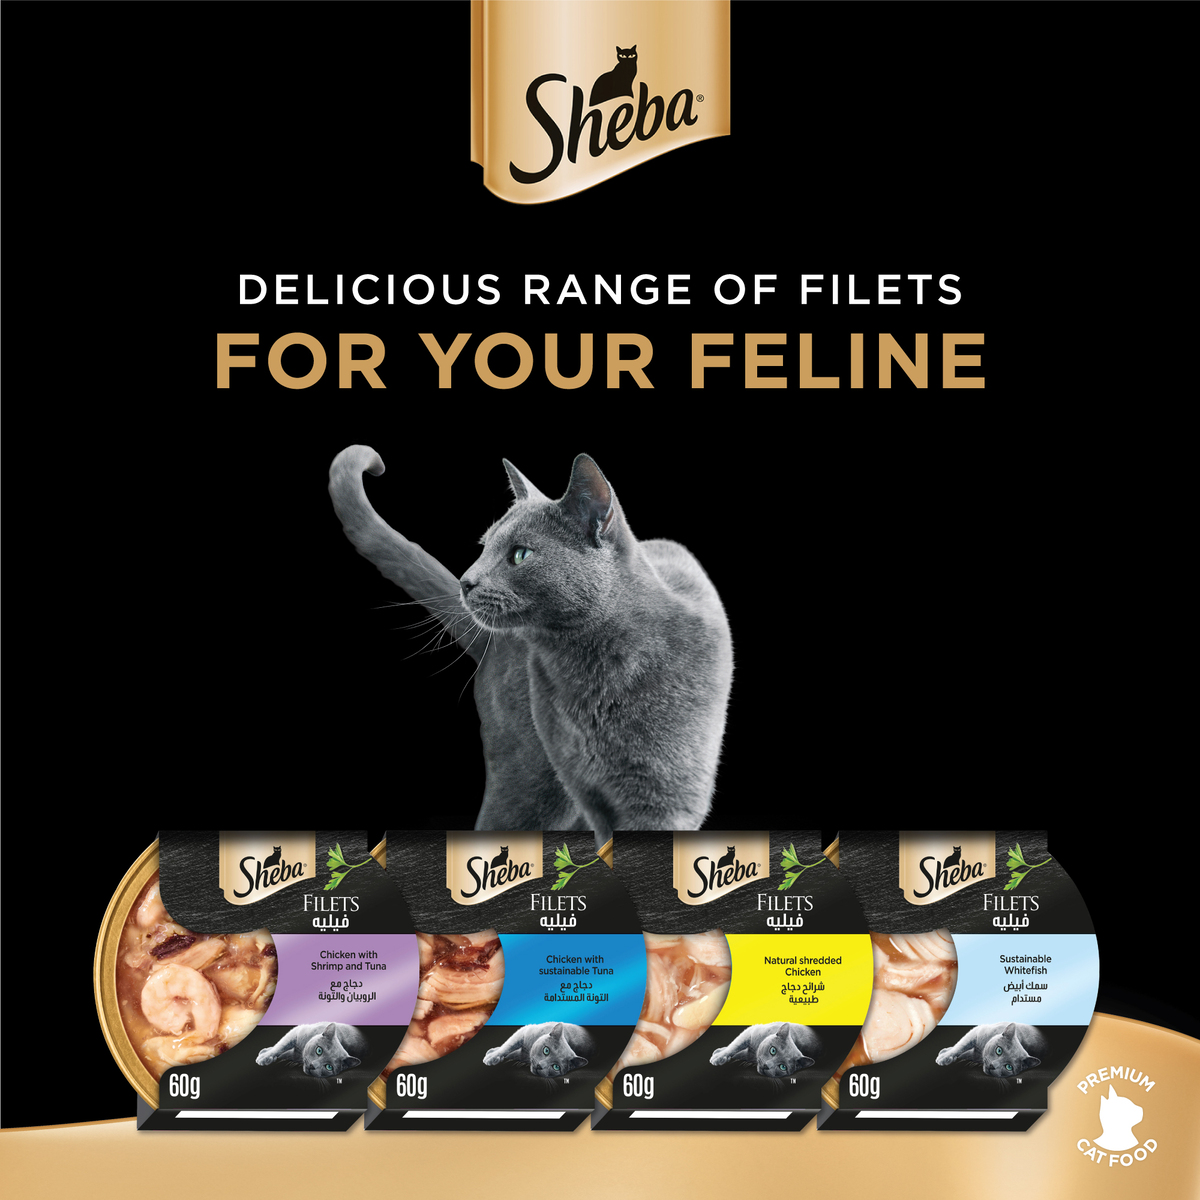 Sheba Fillets Shredded Chicken Cat Food 16 x 60 g